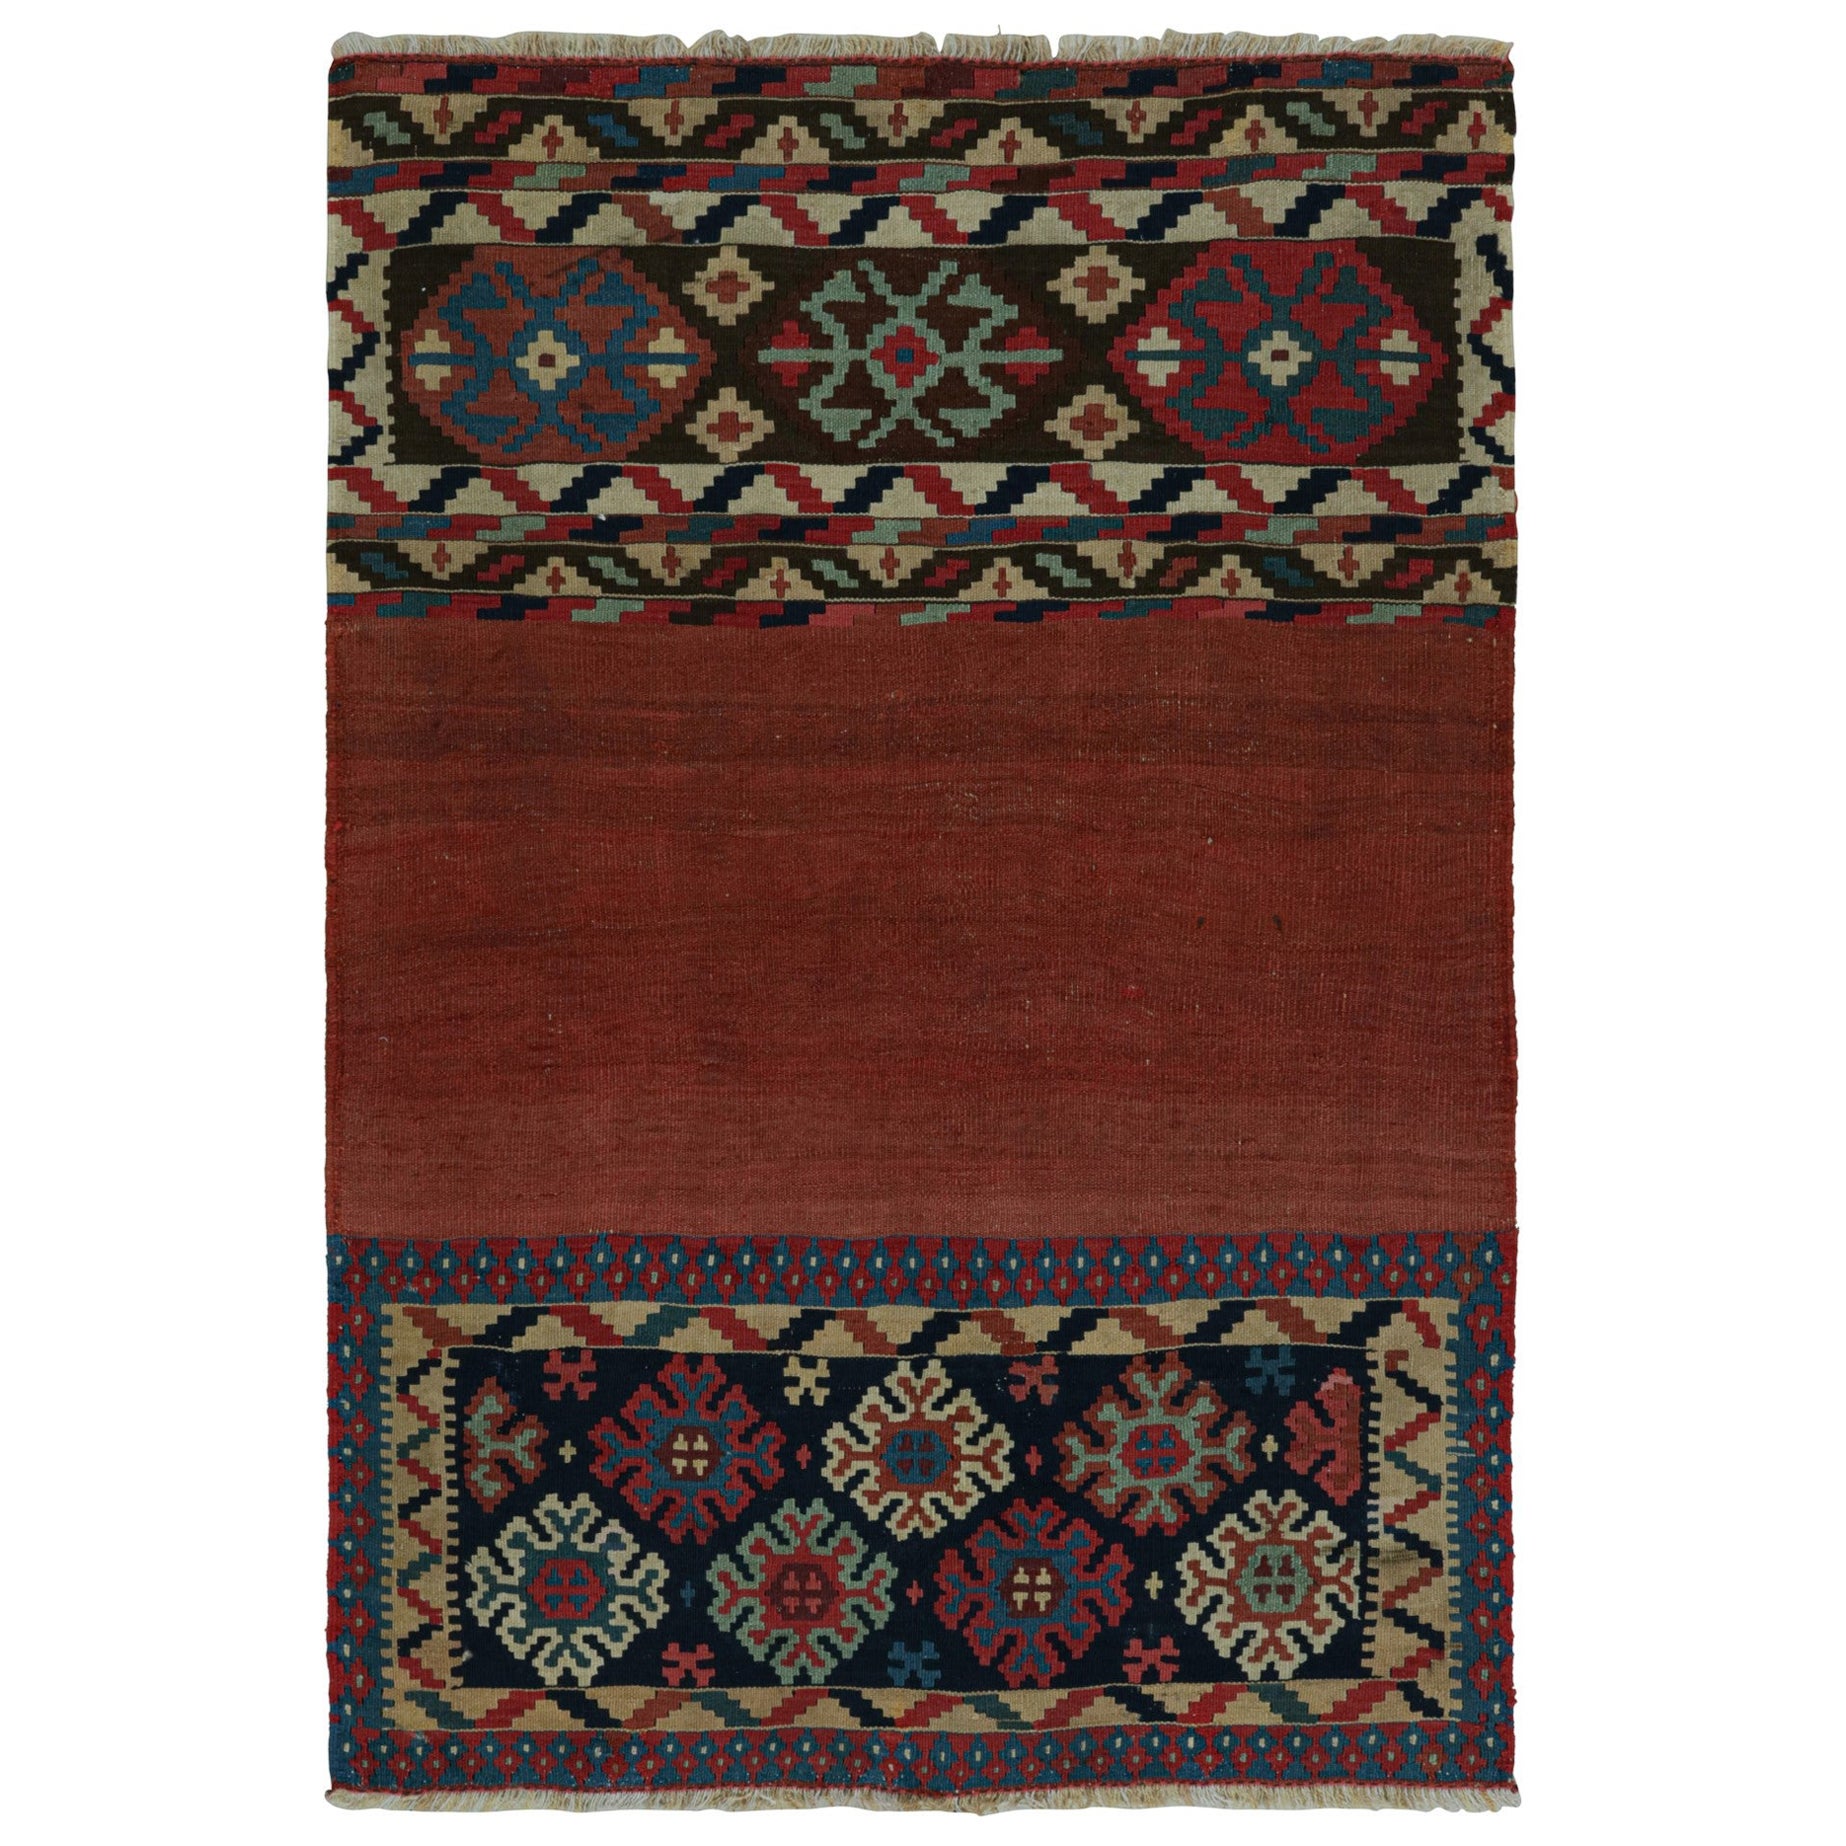 Rug & Kilim's Afghan Tribal Kilim Rug en rouge, avec motifs géométriques colorés